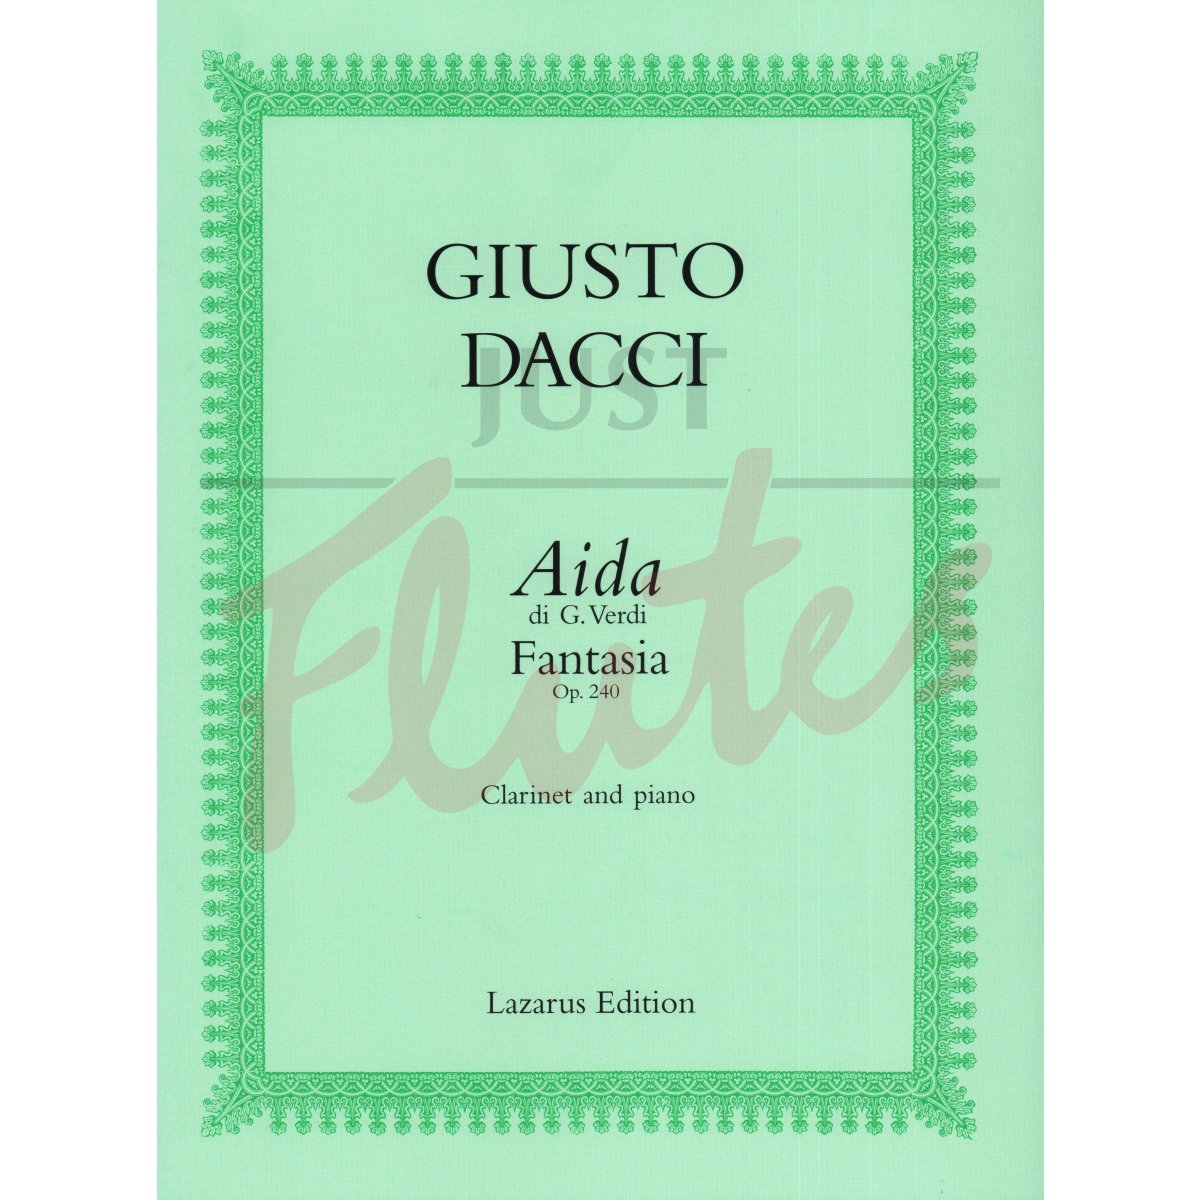 Fantasia on Verdi's Aida